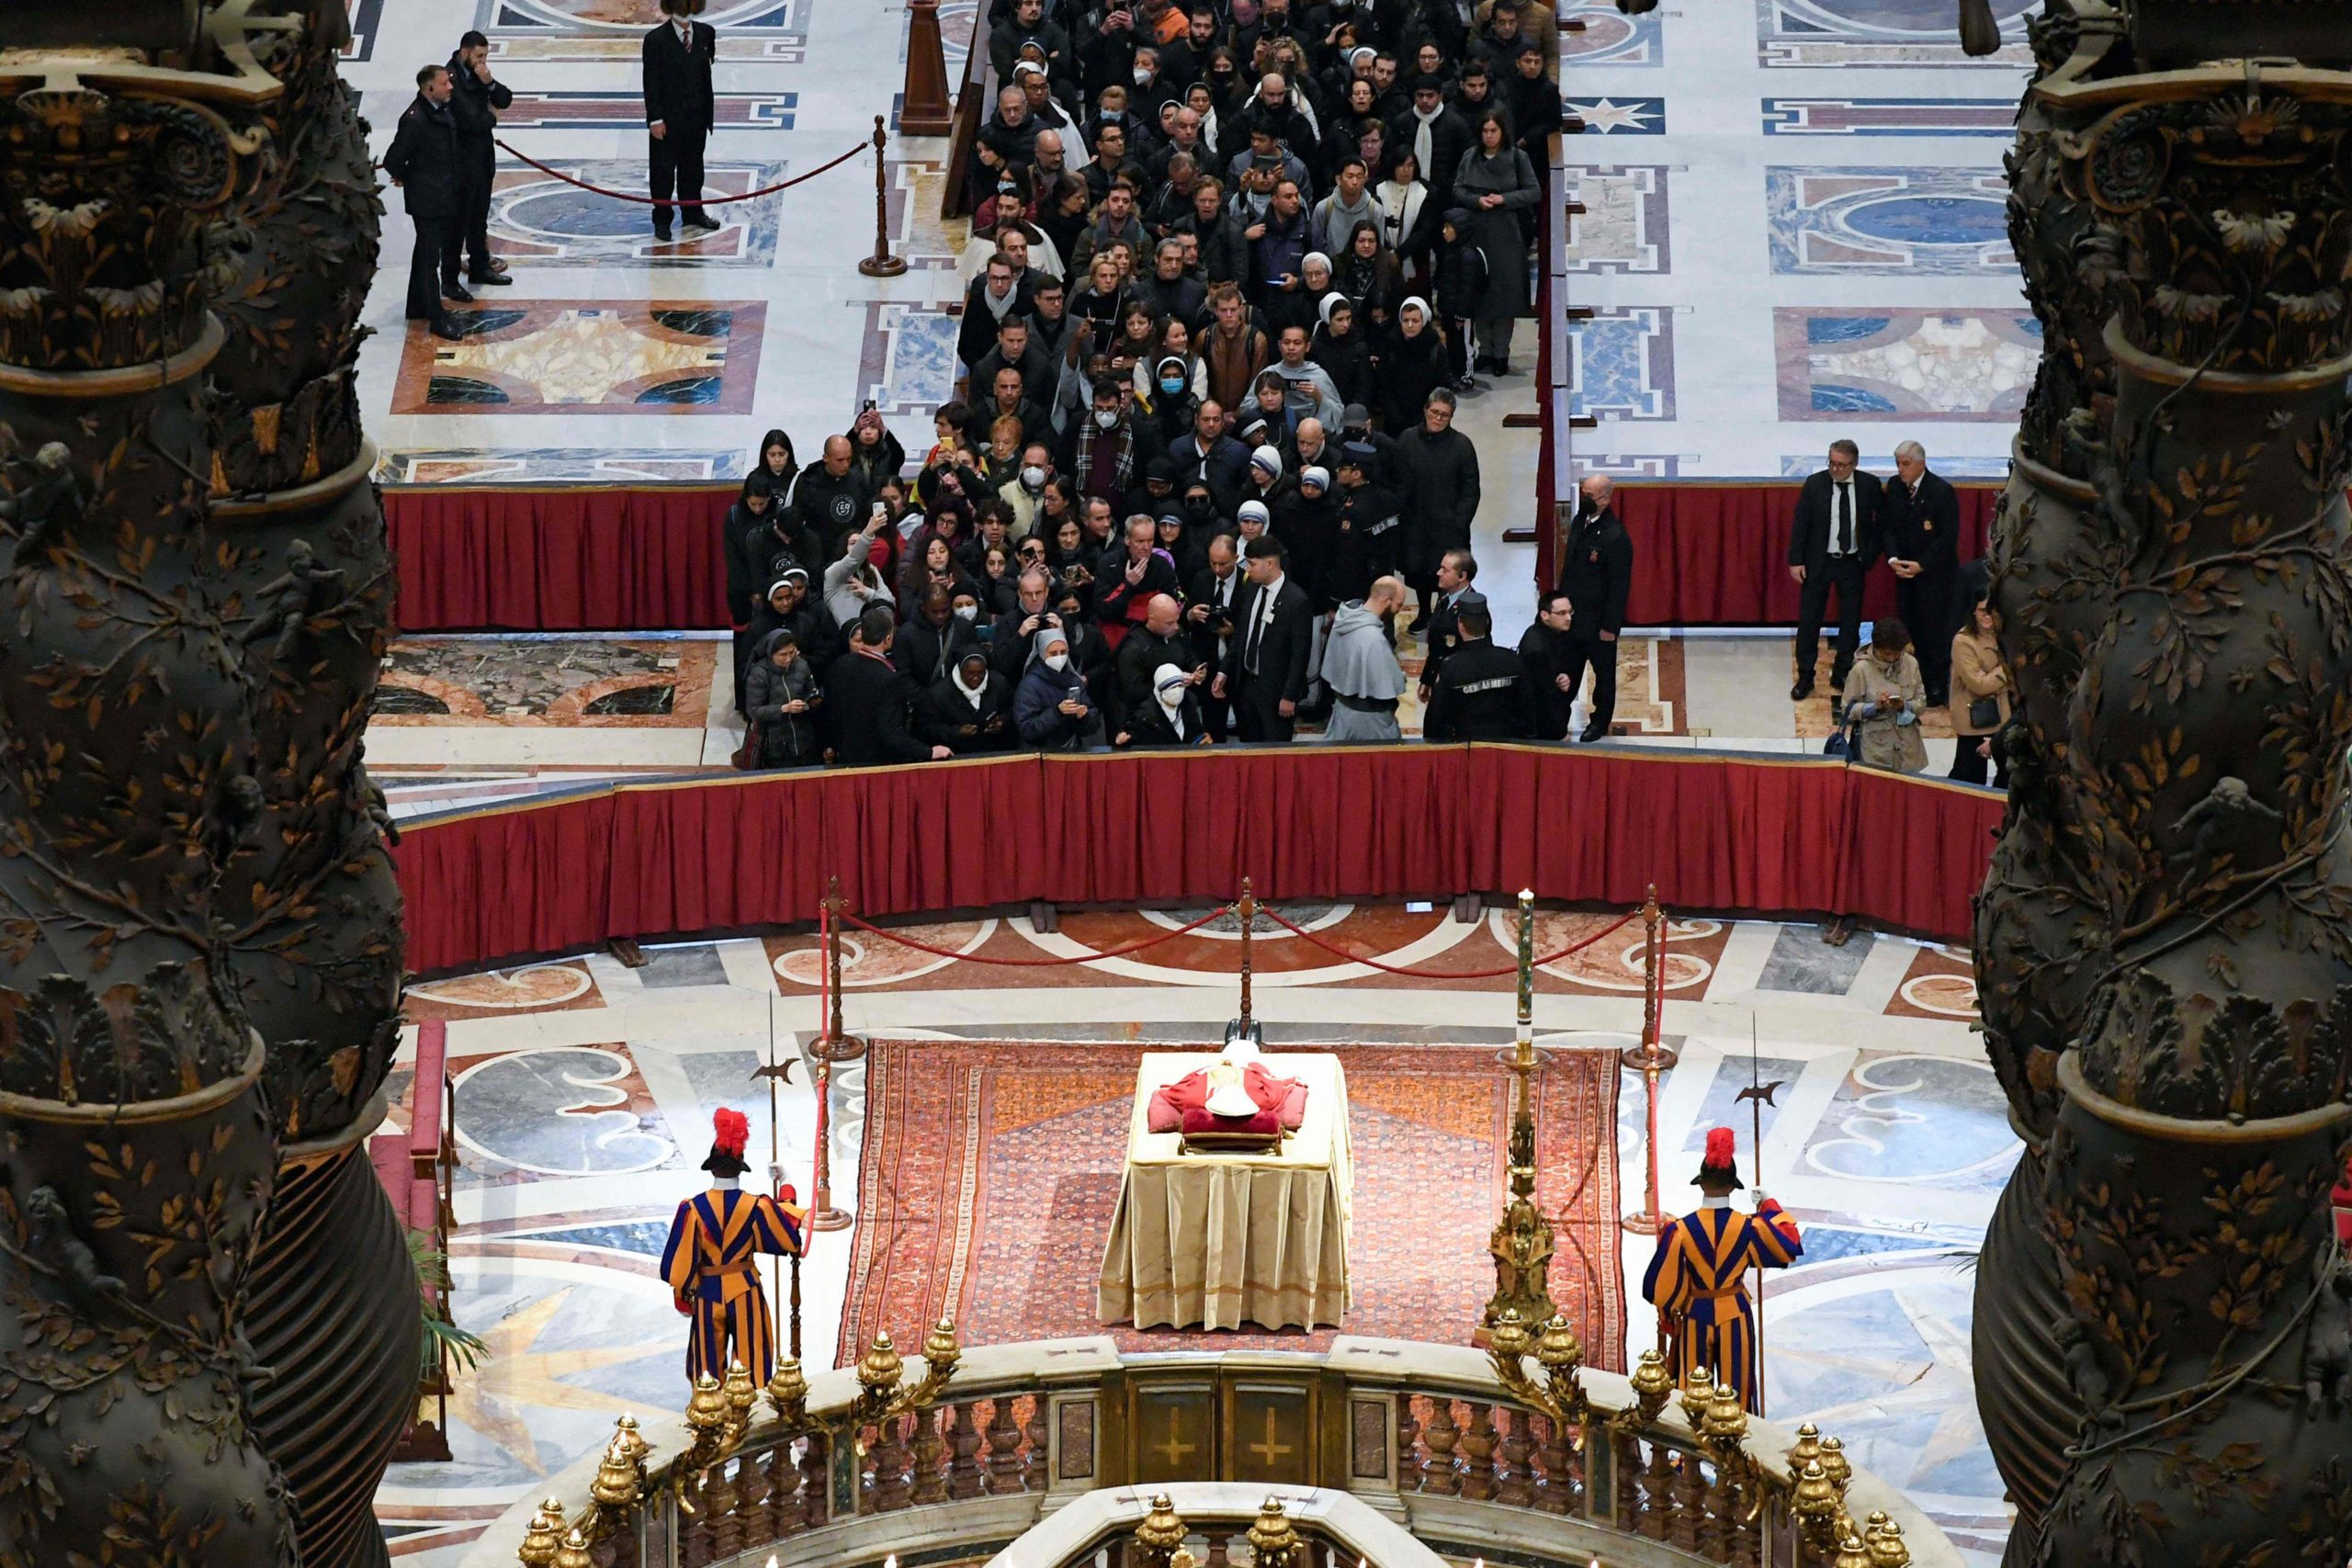 La foule commence à rendre hommage au pape Benoît XVI au Vatican, à Rome